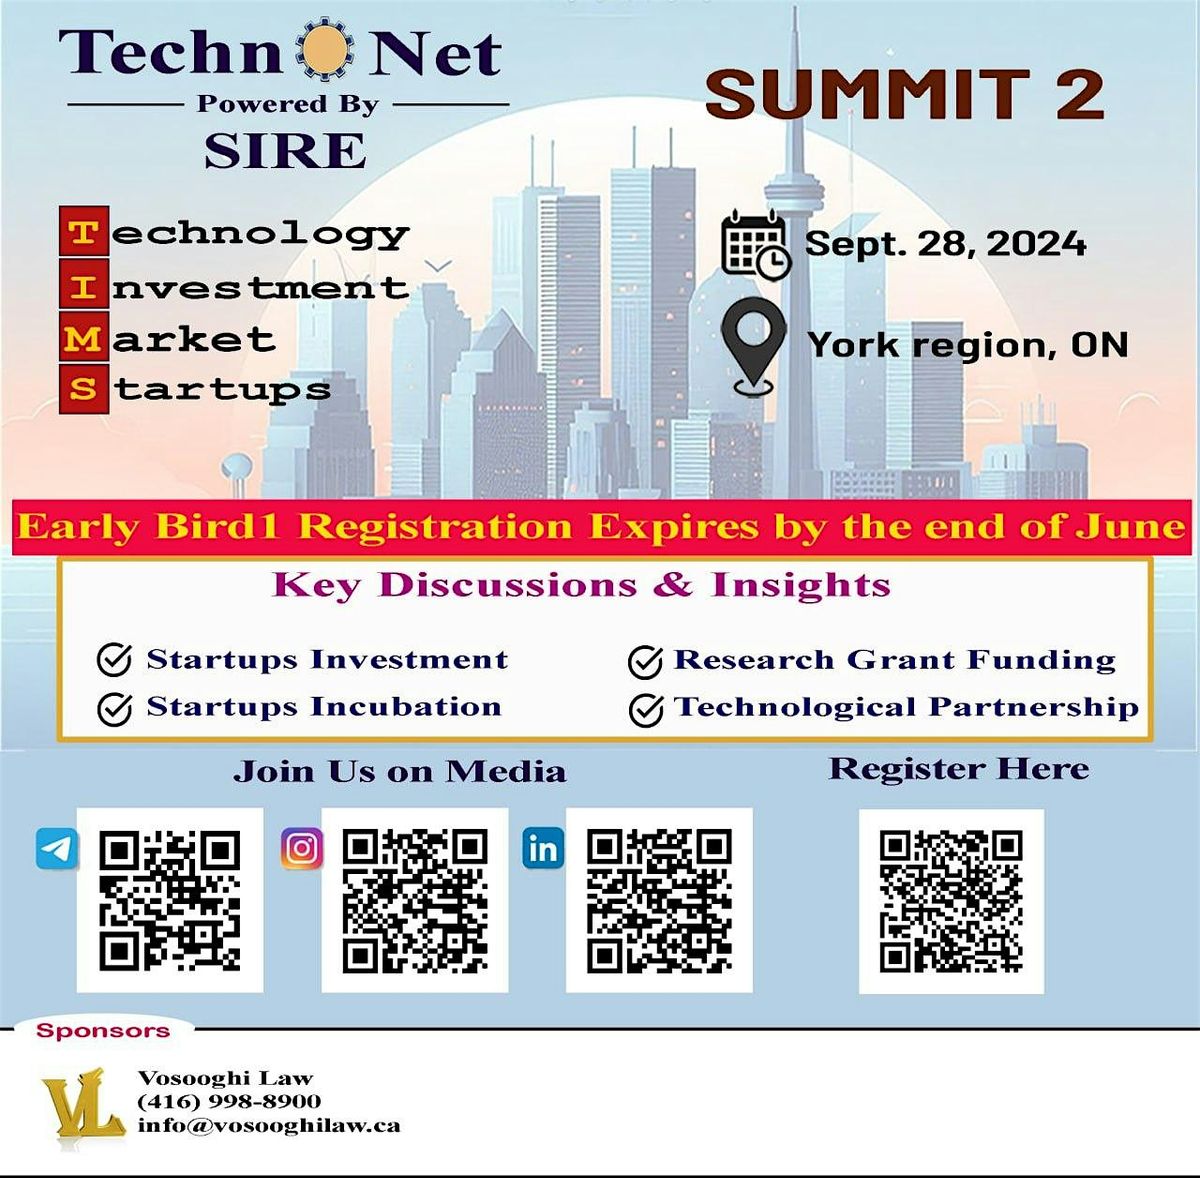 TechnoNet Summit#2